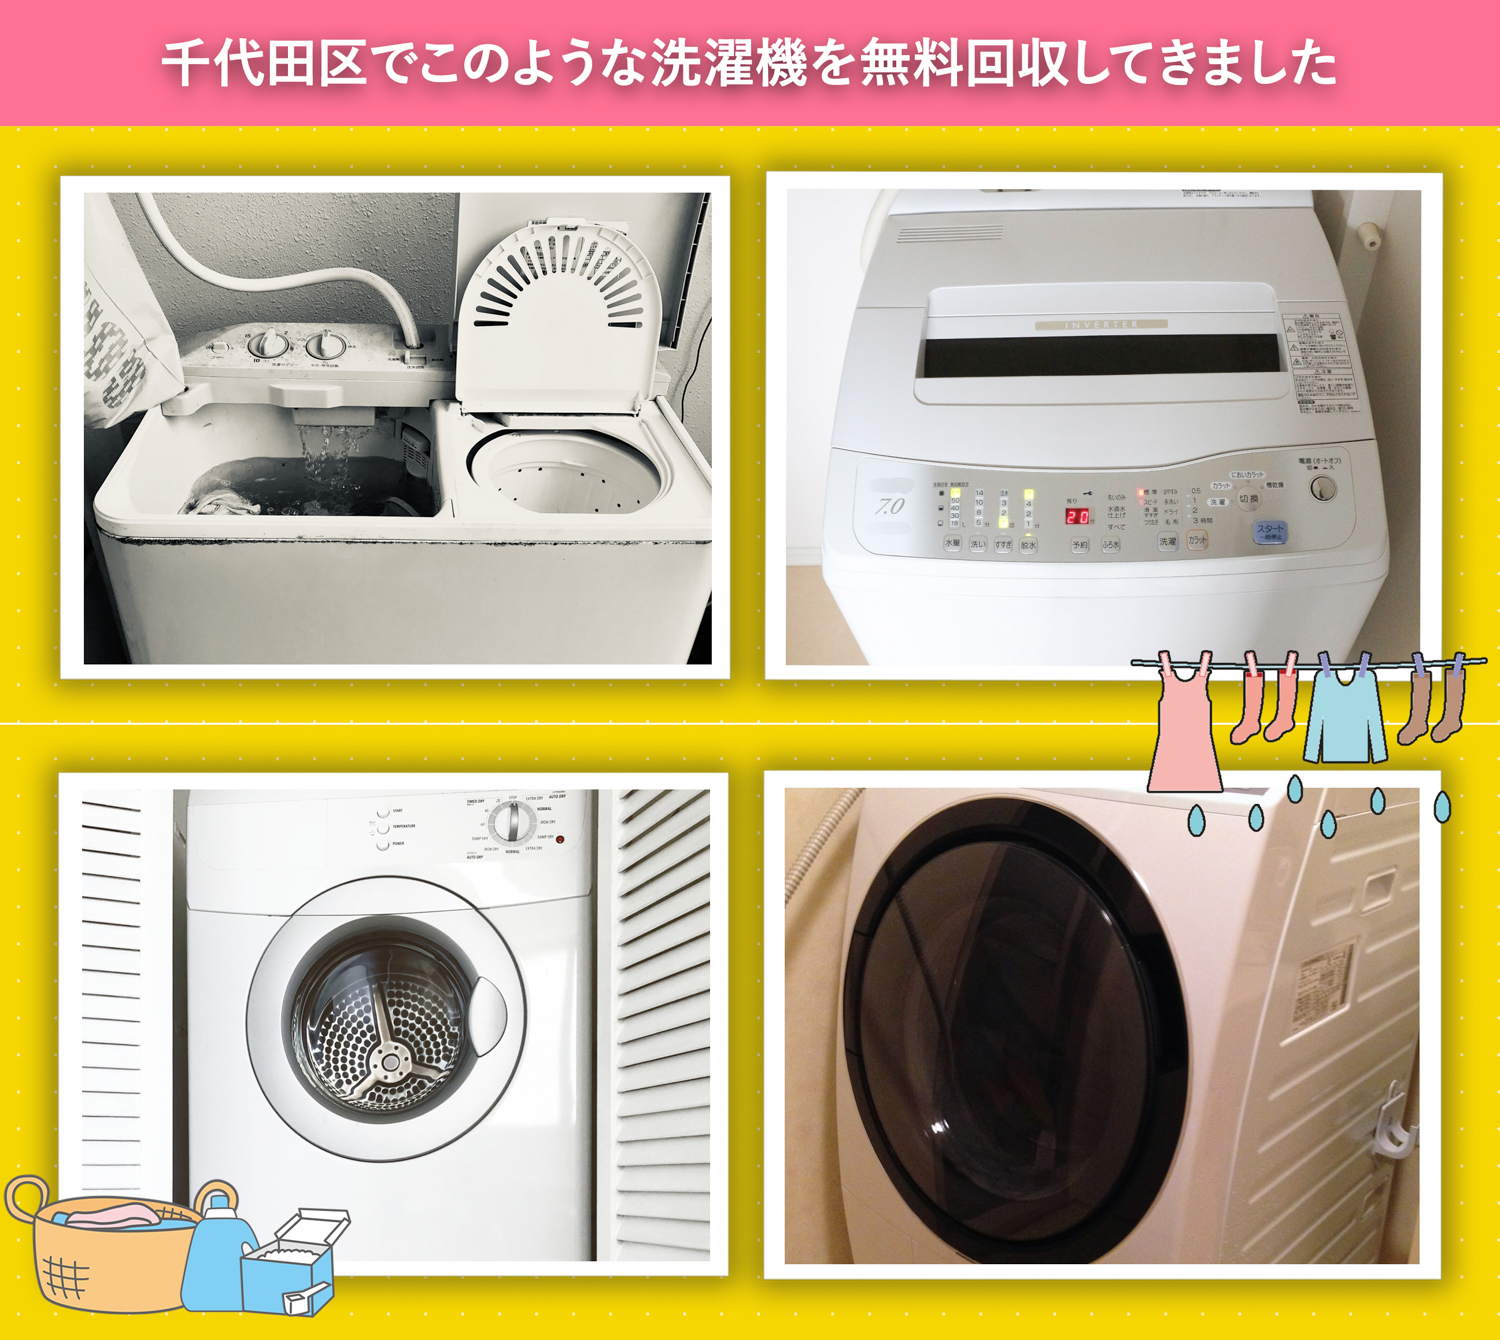 千代田区でこのような洗濯機を無料回収してきました。